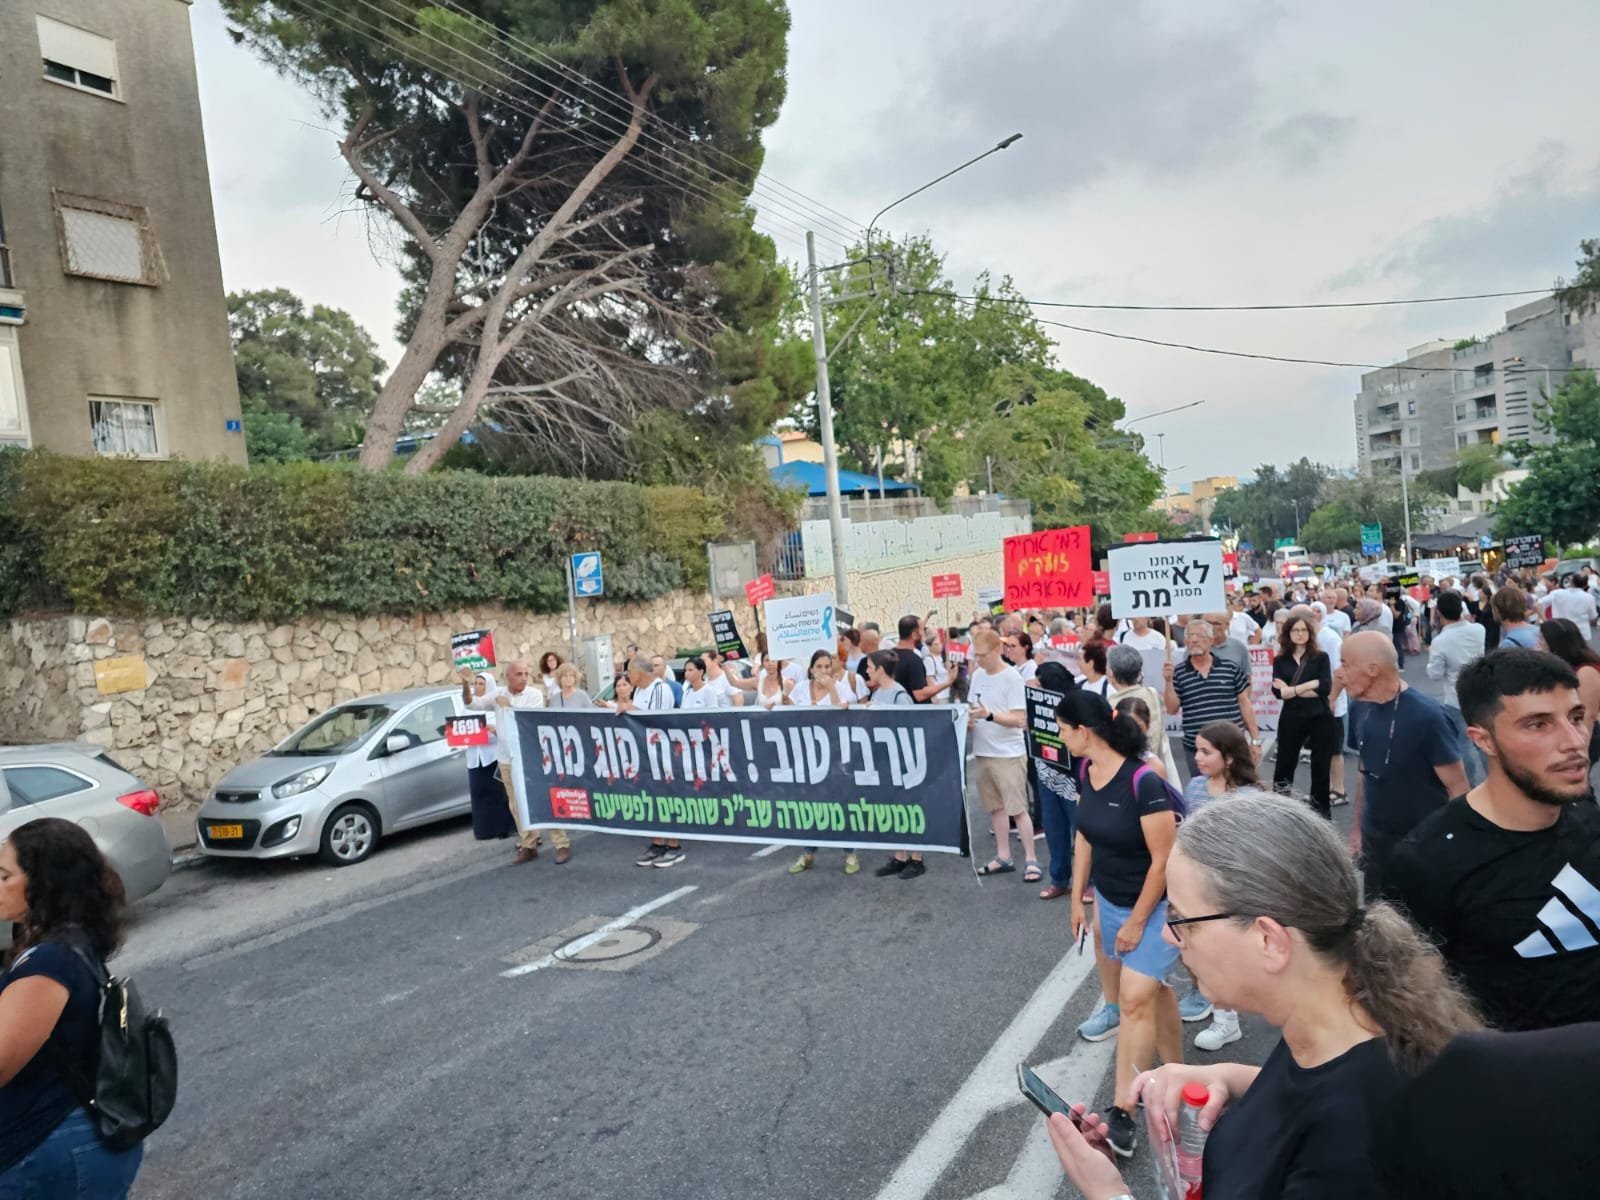 حيفا: اختتام "مسيرة الأموات"- حضور مهيب رافض للعنف والجريمة!-44